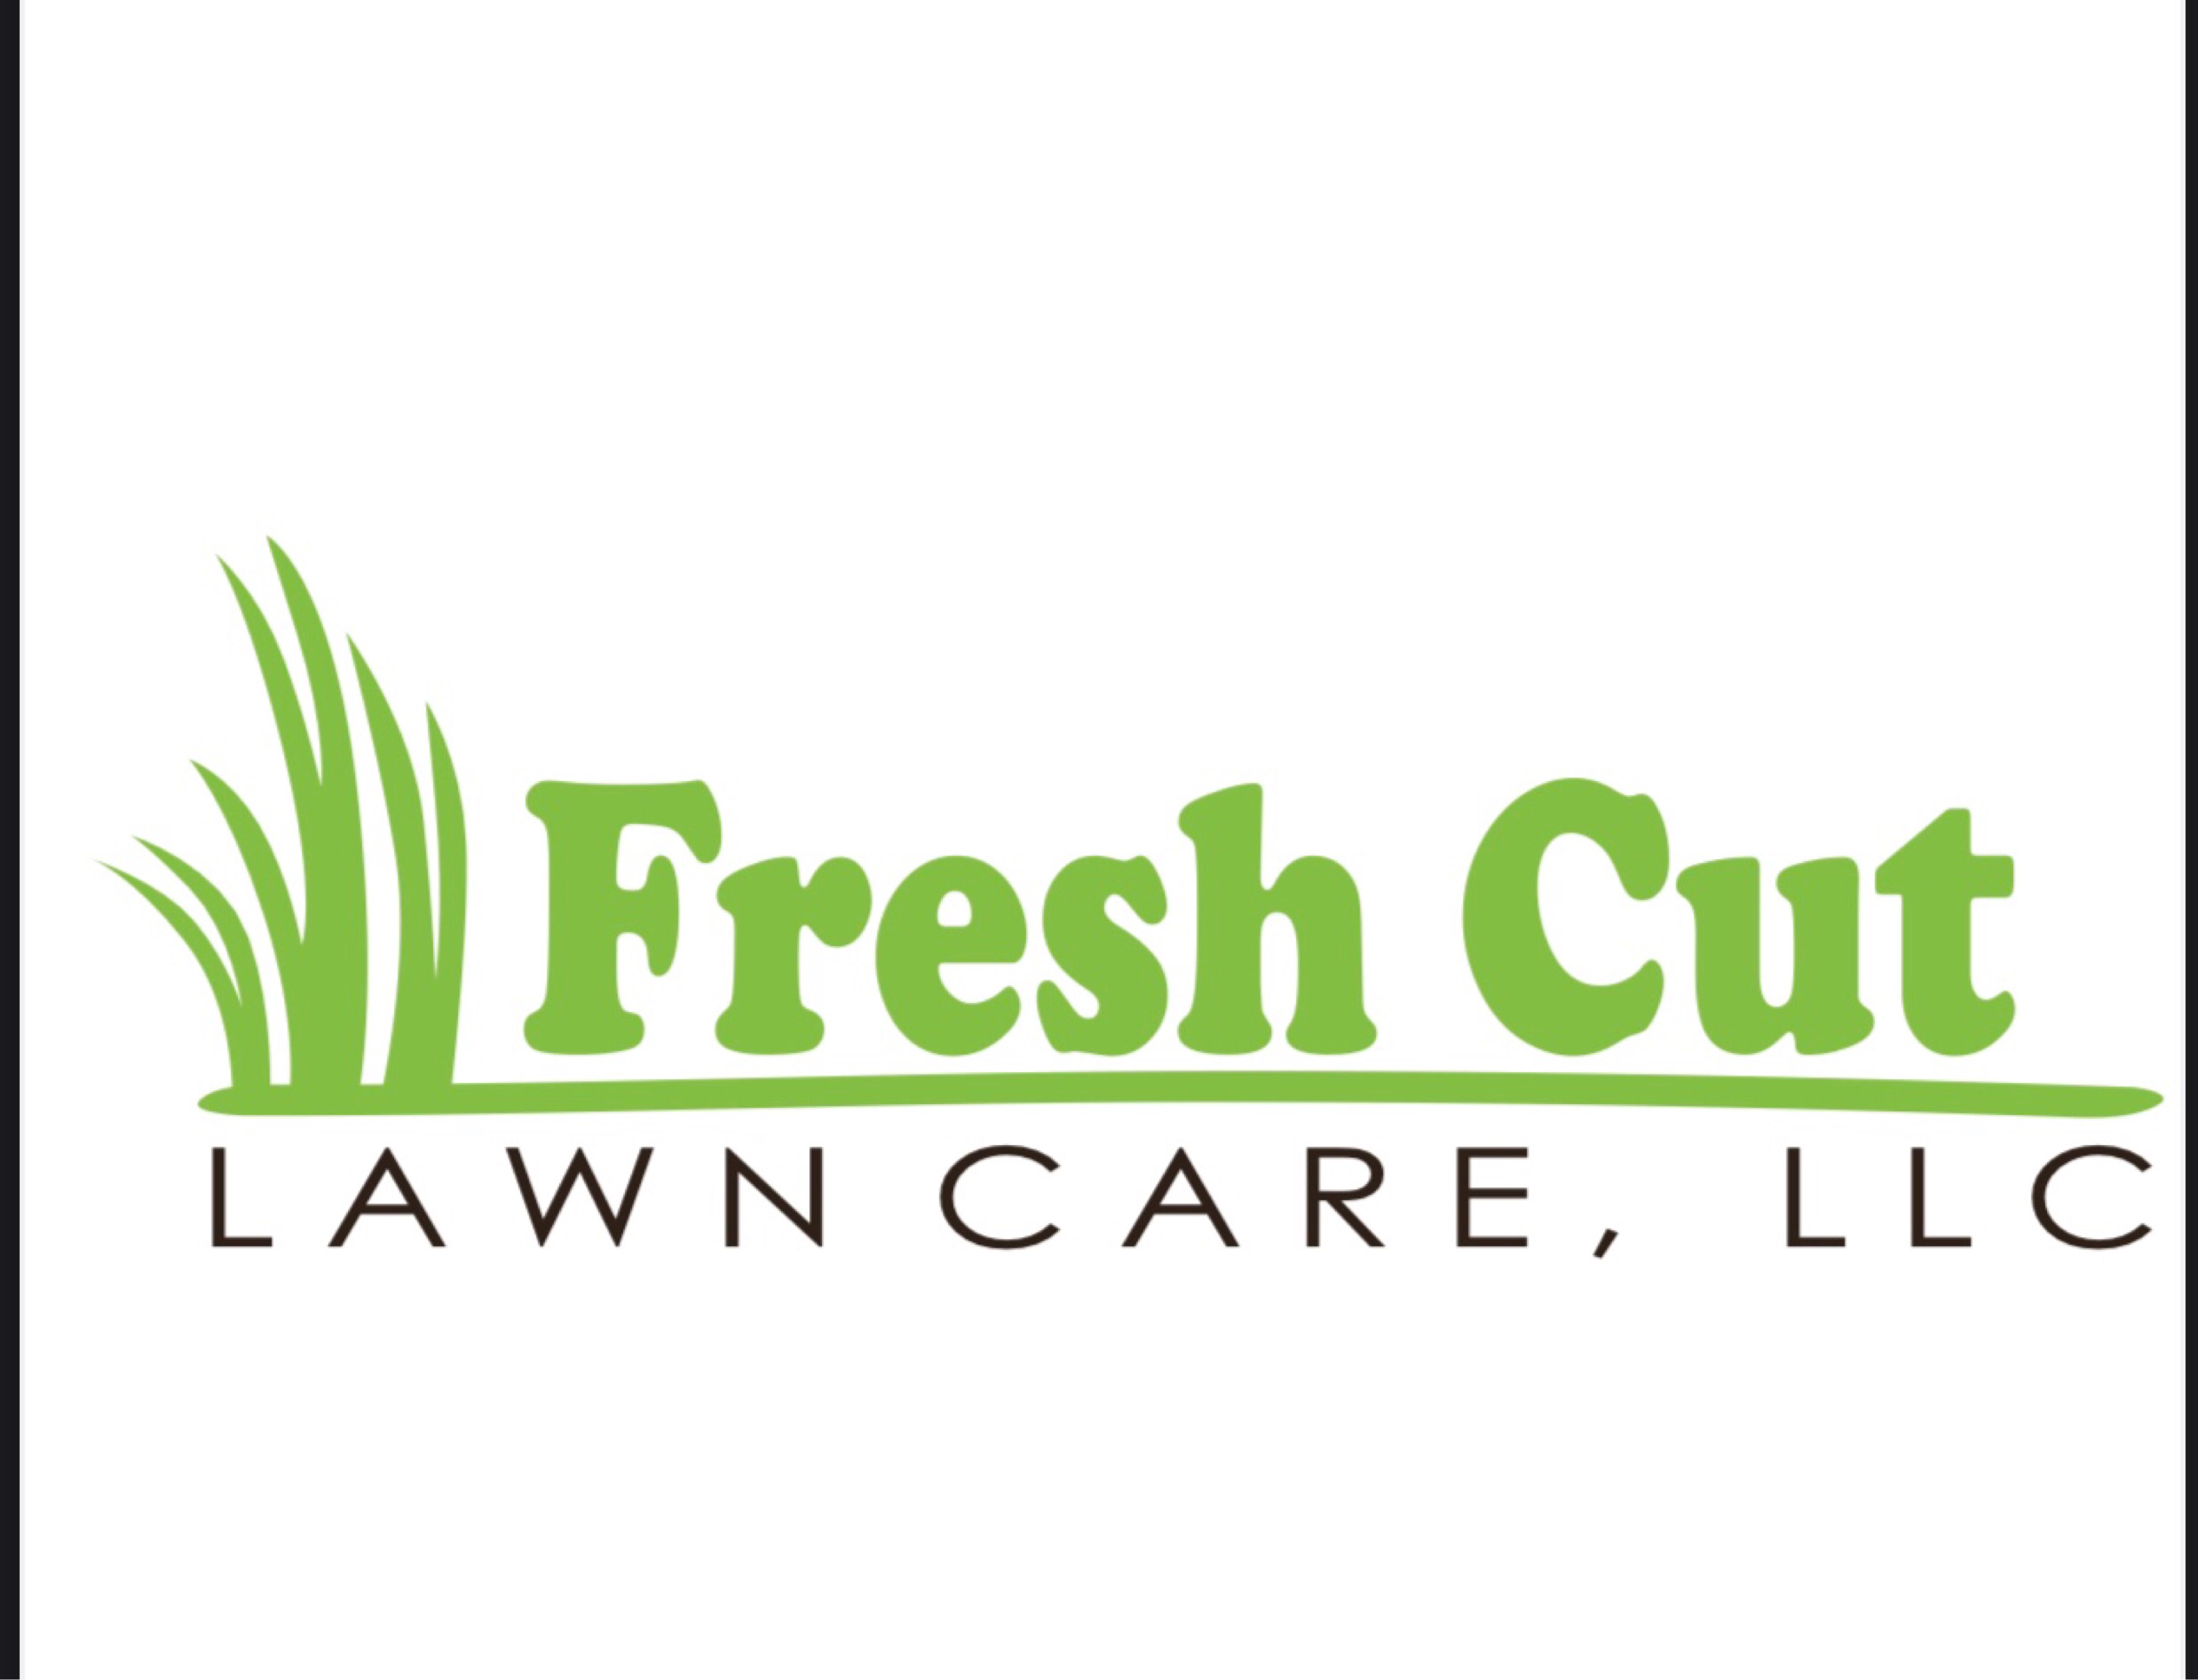 Fresh Cut Lawn Care LLC Logo